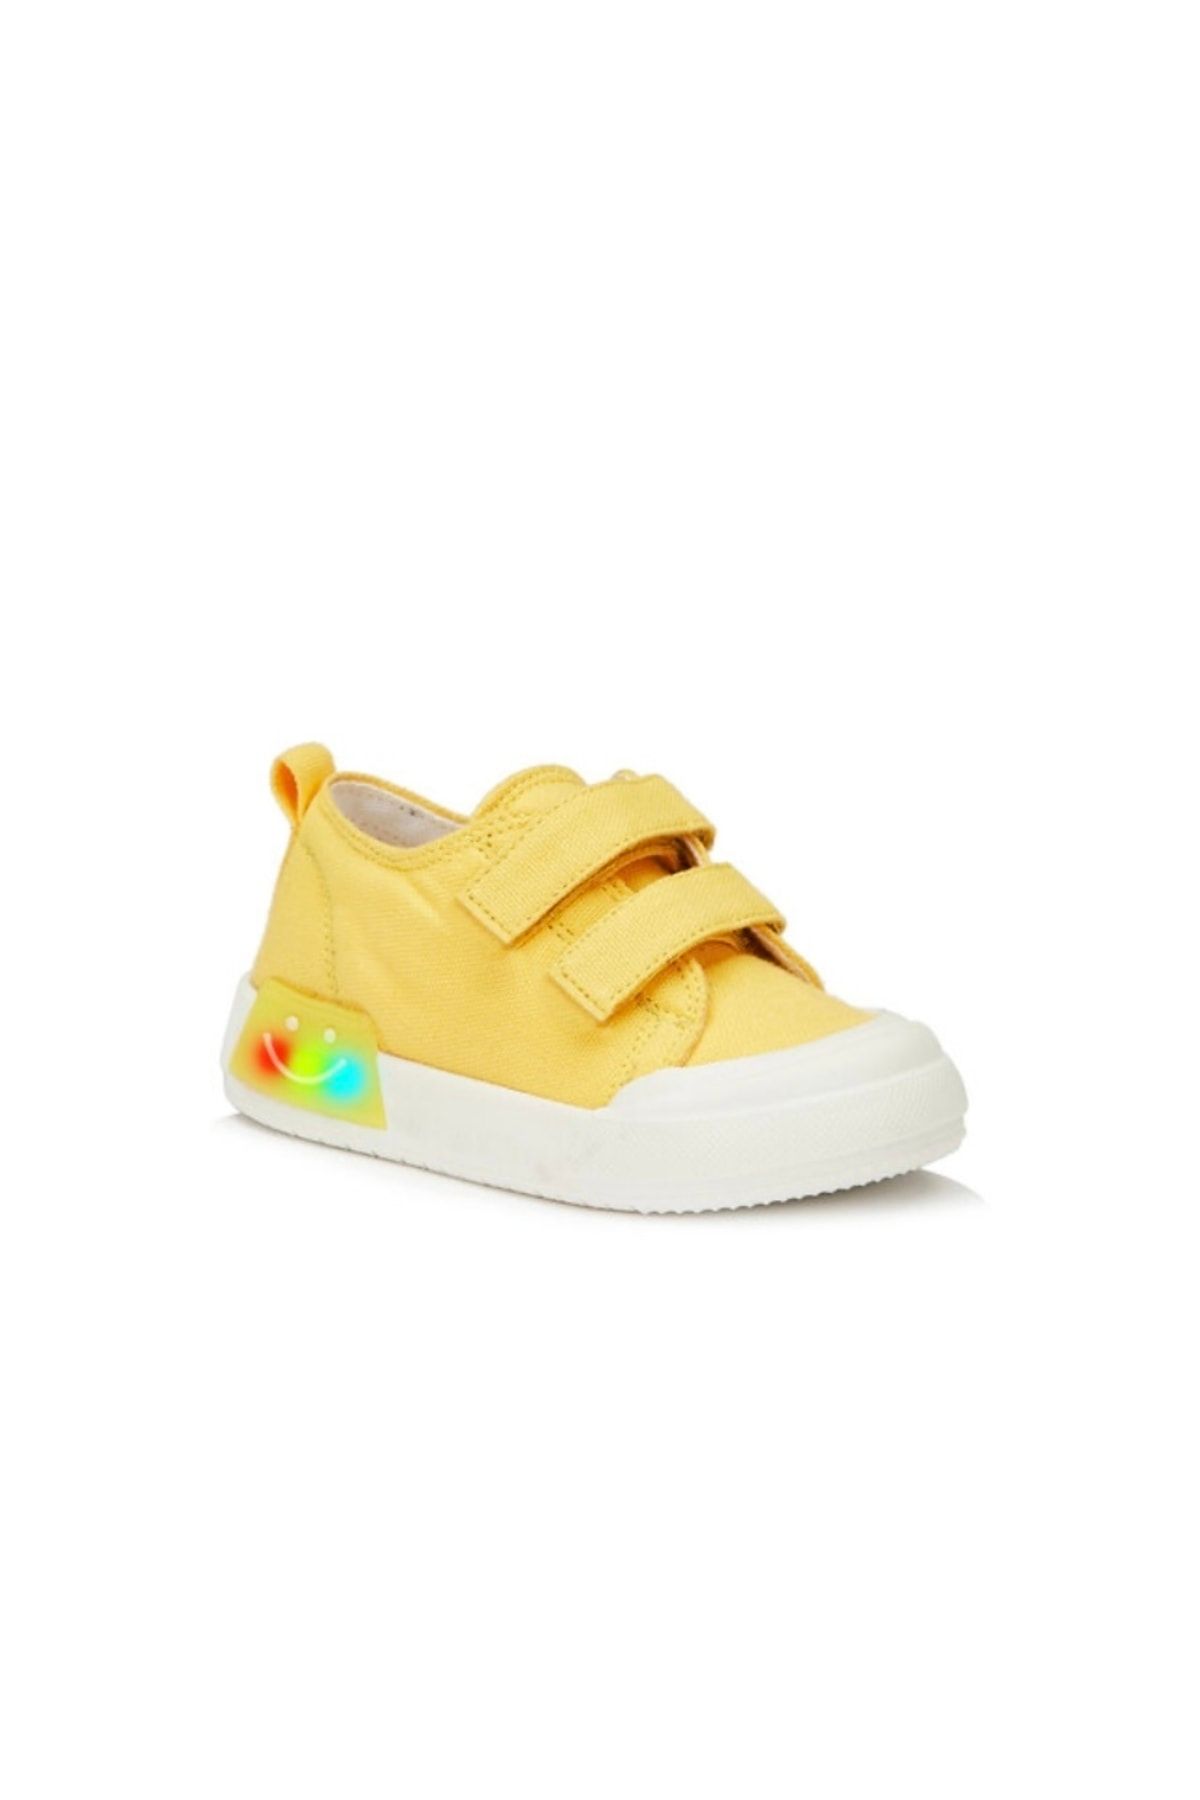 Vicco Luffy Işıklı Unisex Bebek Sarı Spor Ayakkabı